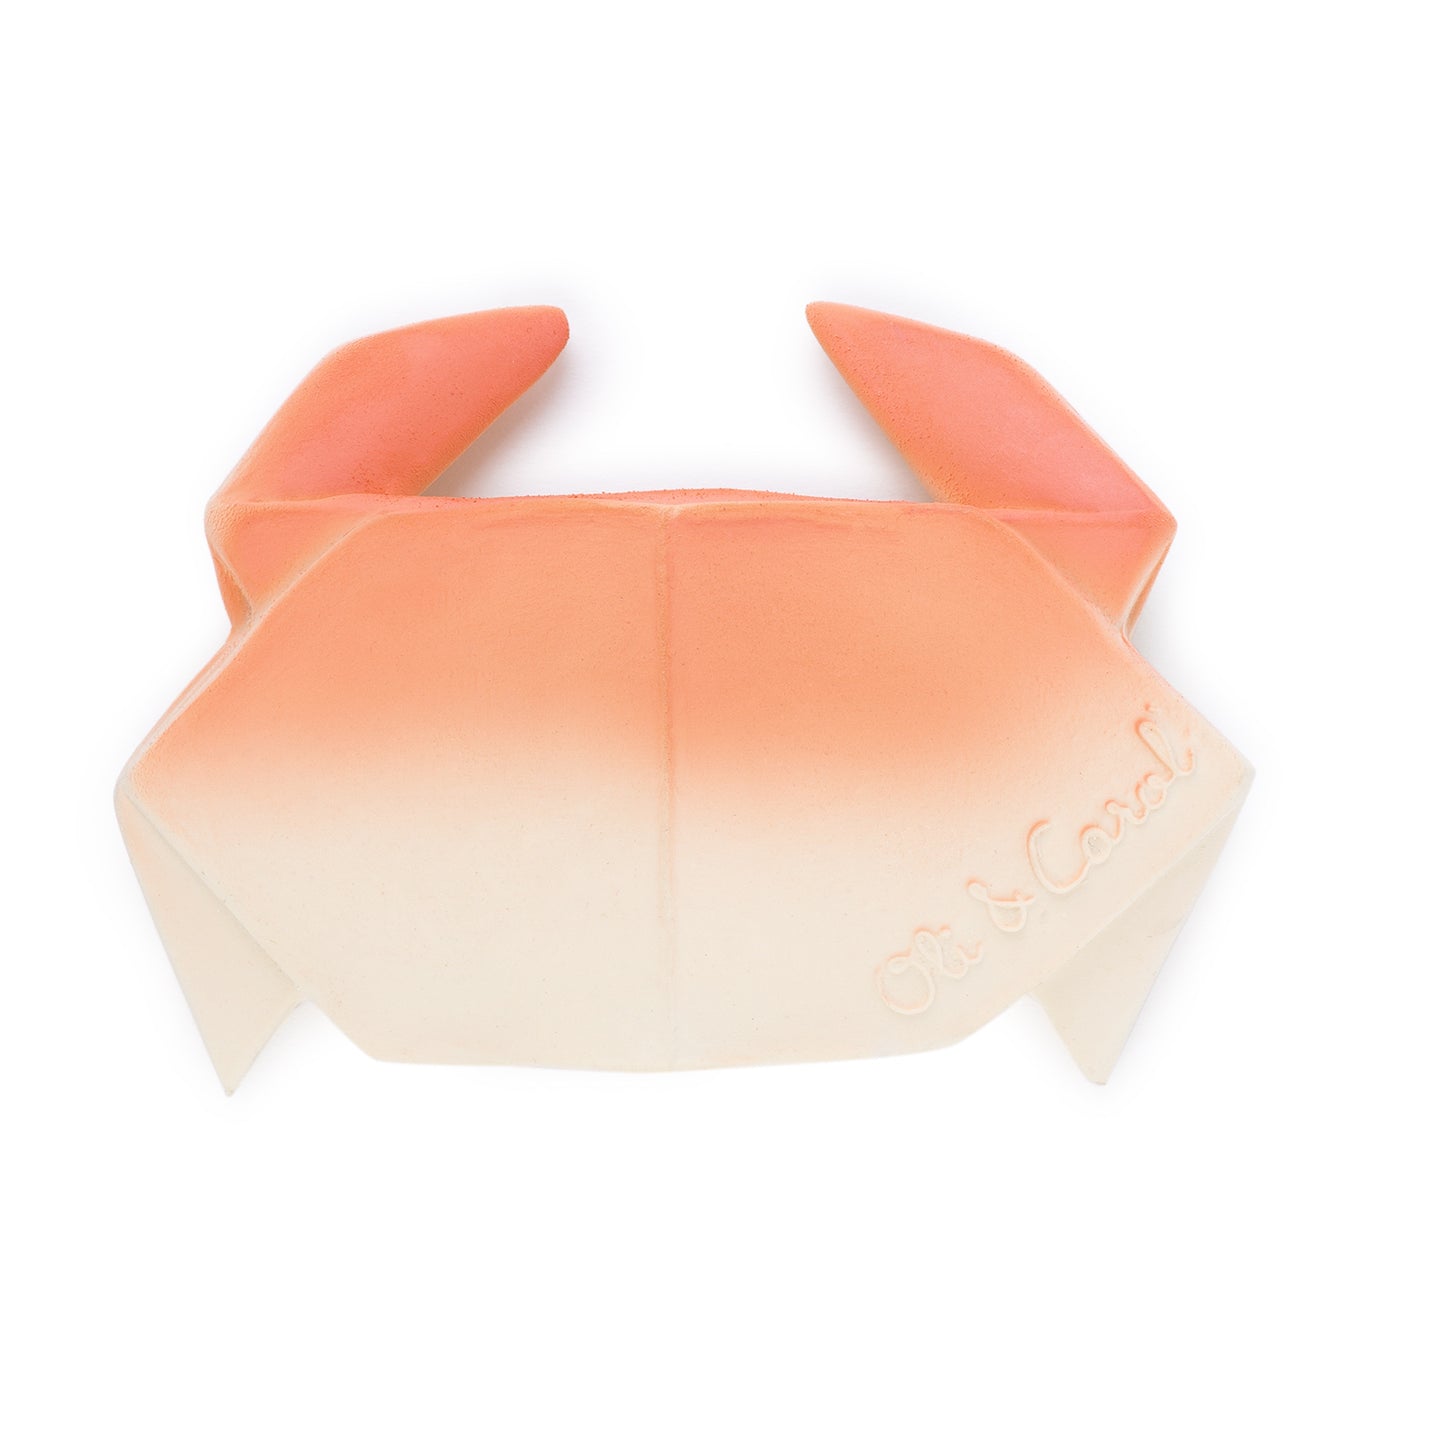 Origami Crab Bath Toy/Teether